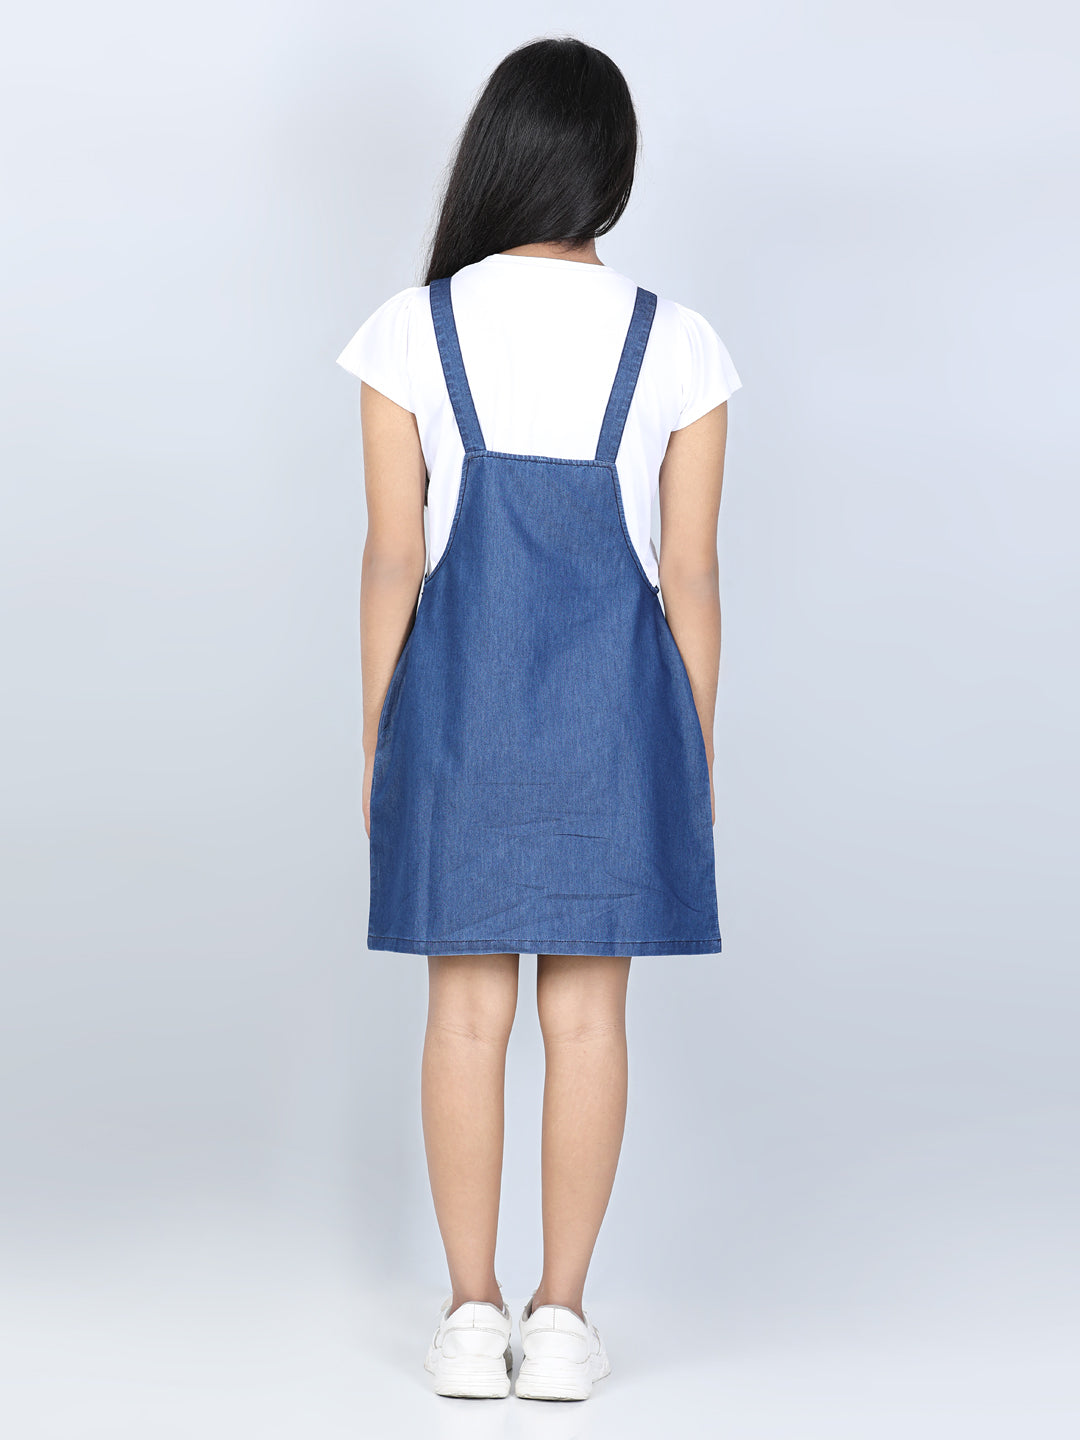 Girls Blue Denim Dungaree Dress ( T Shirt not Provided)